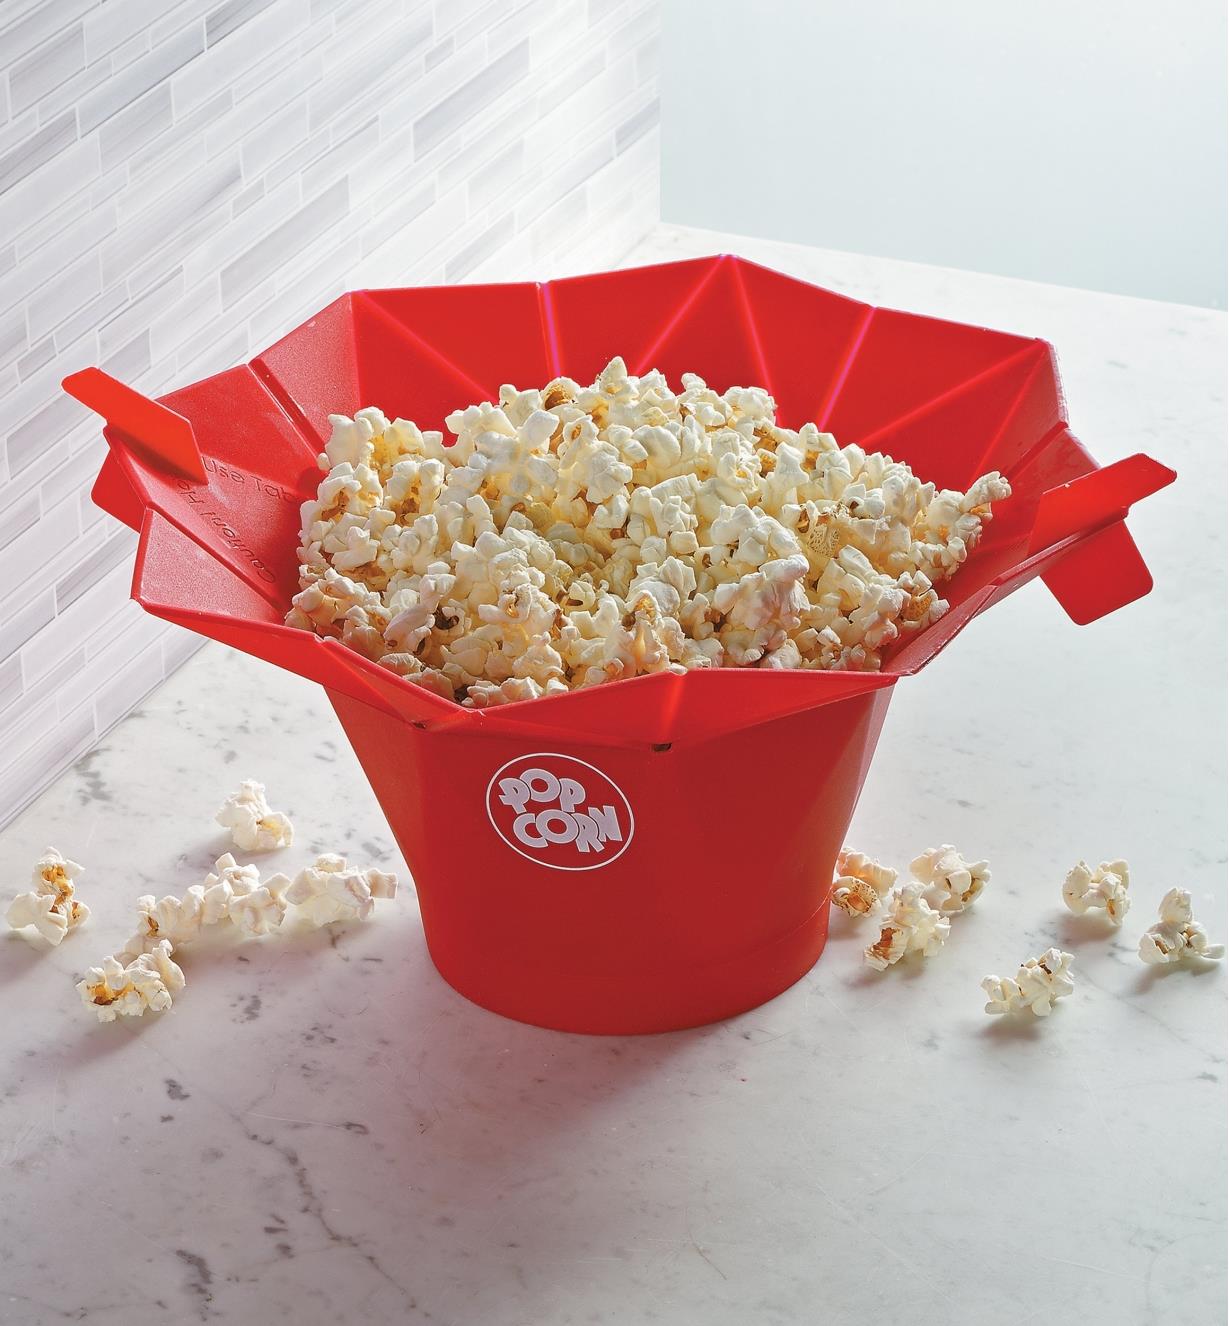 Poptop Popcorn Popper